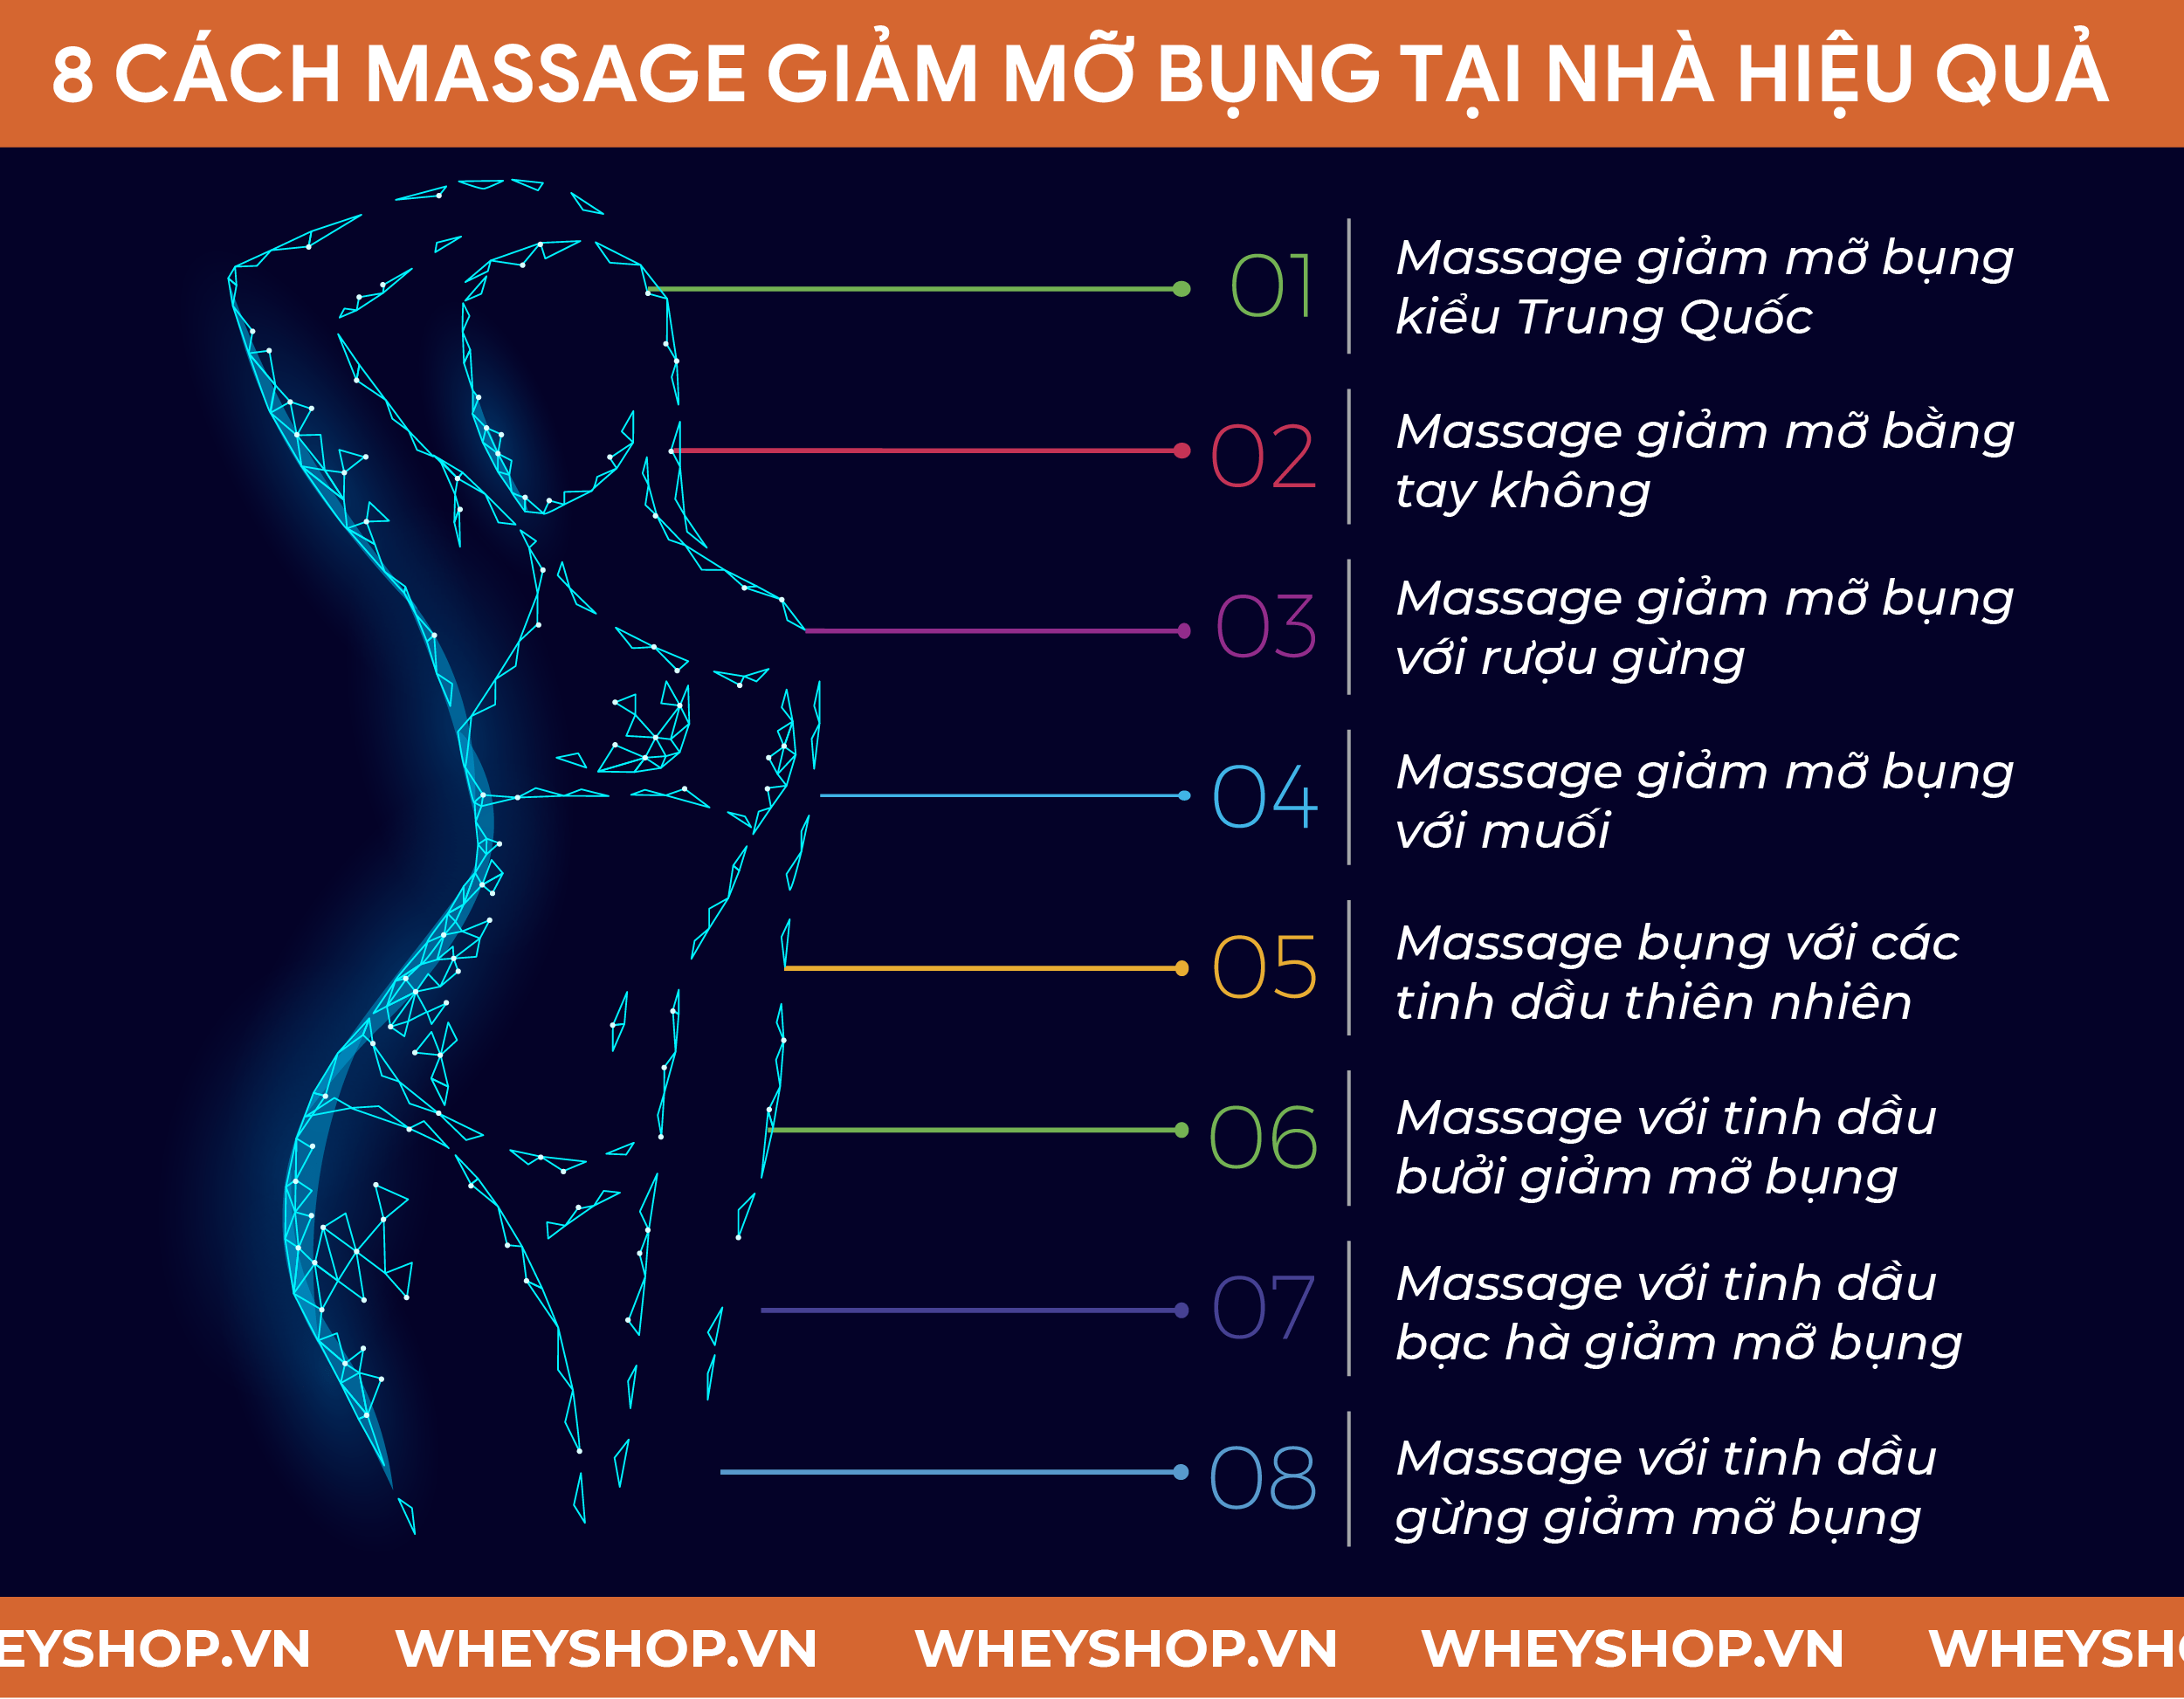 Nếu bạn đang băn khoăn tìm cách massage giảm mỡ bụng hiệu quả thì hãy cùng WheyShop tham khảo chi tiết qua bài viết...